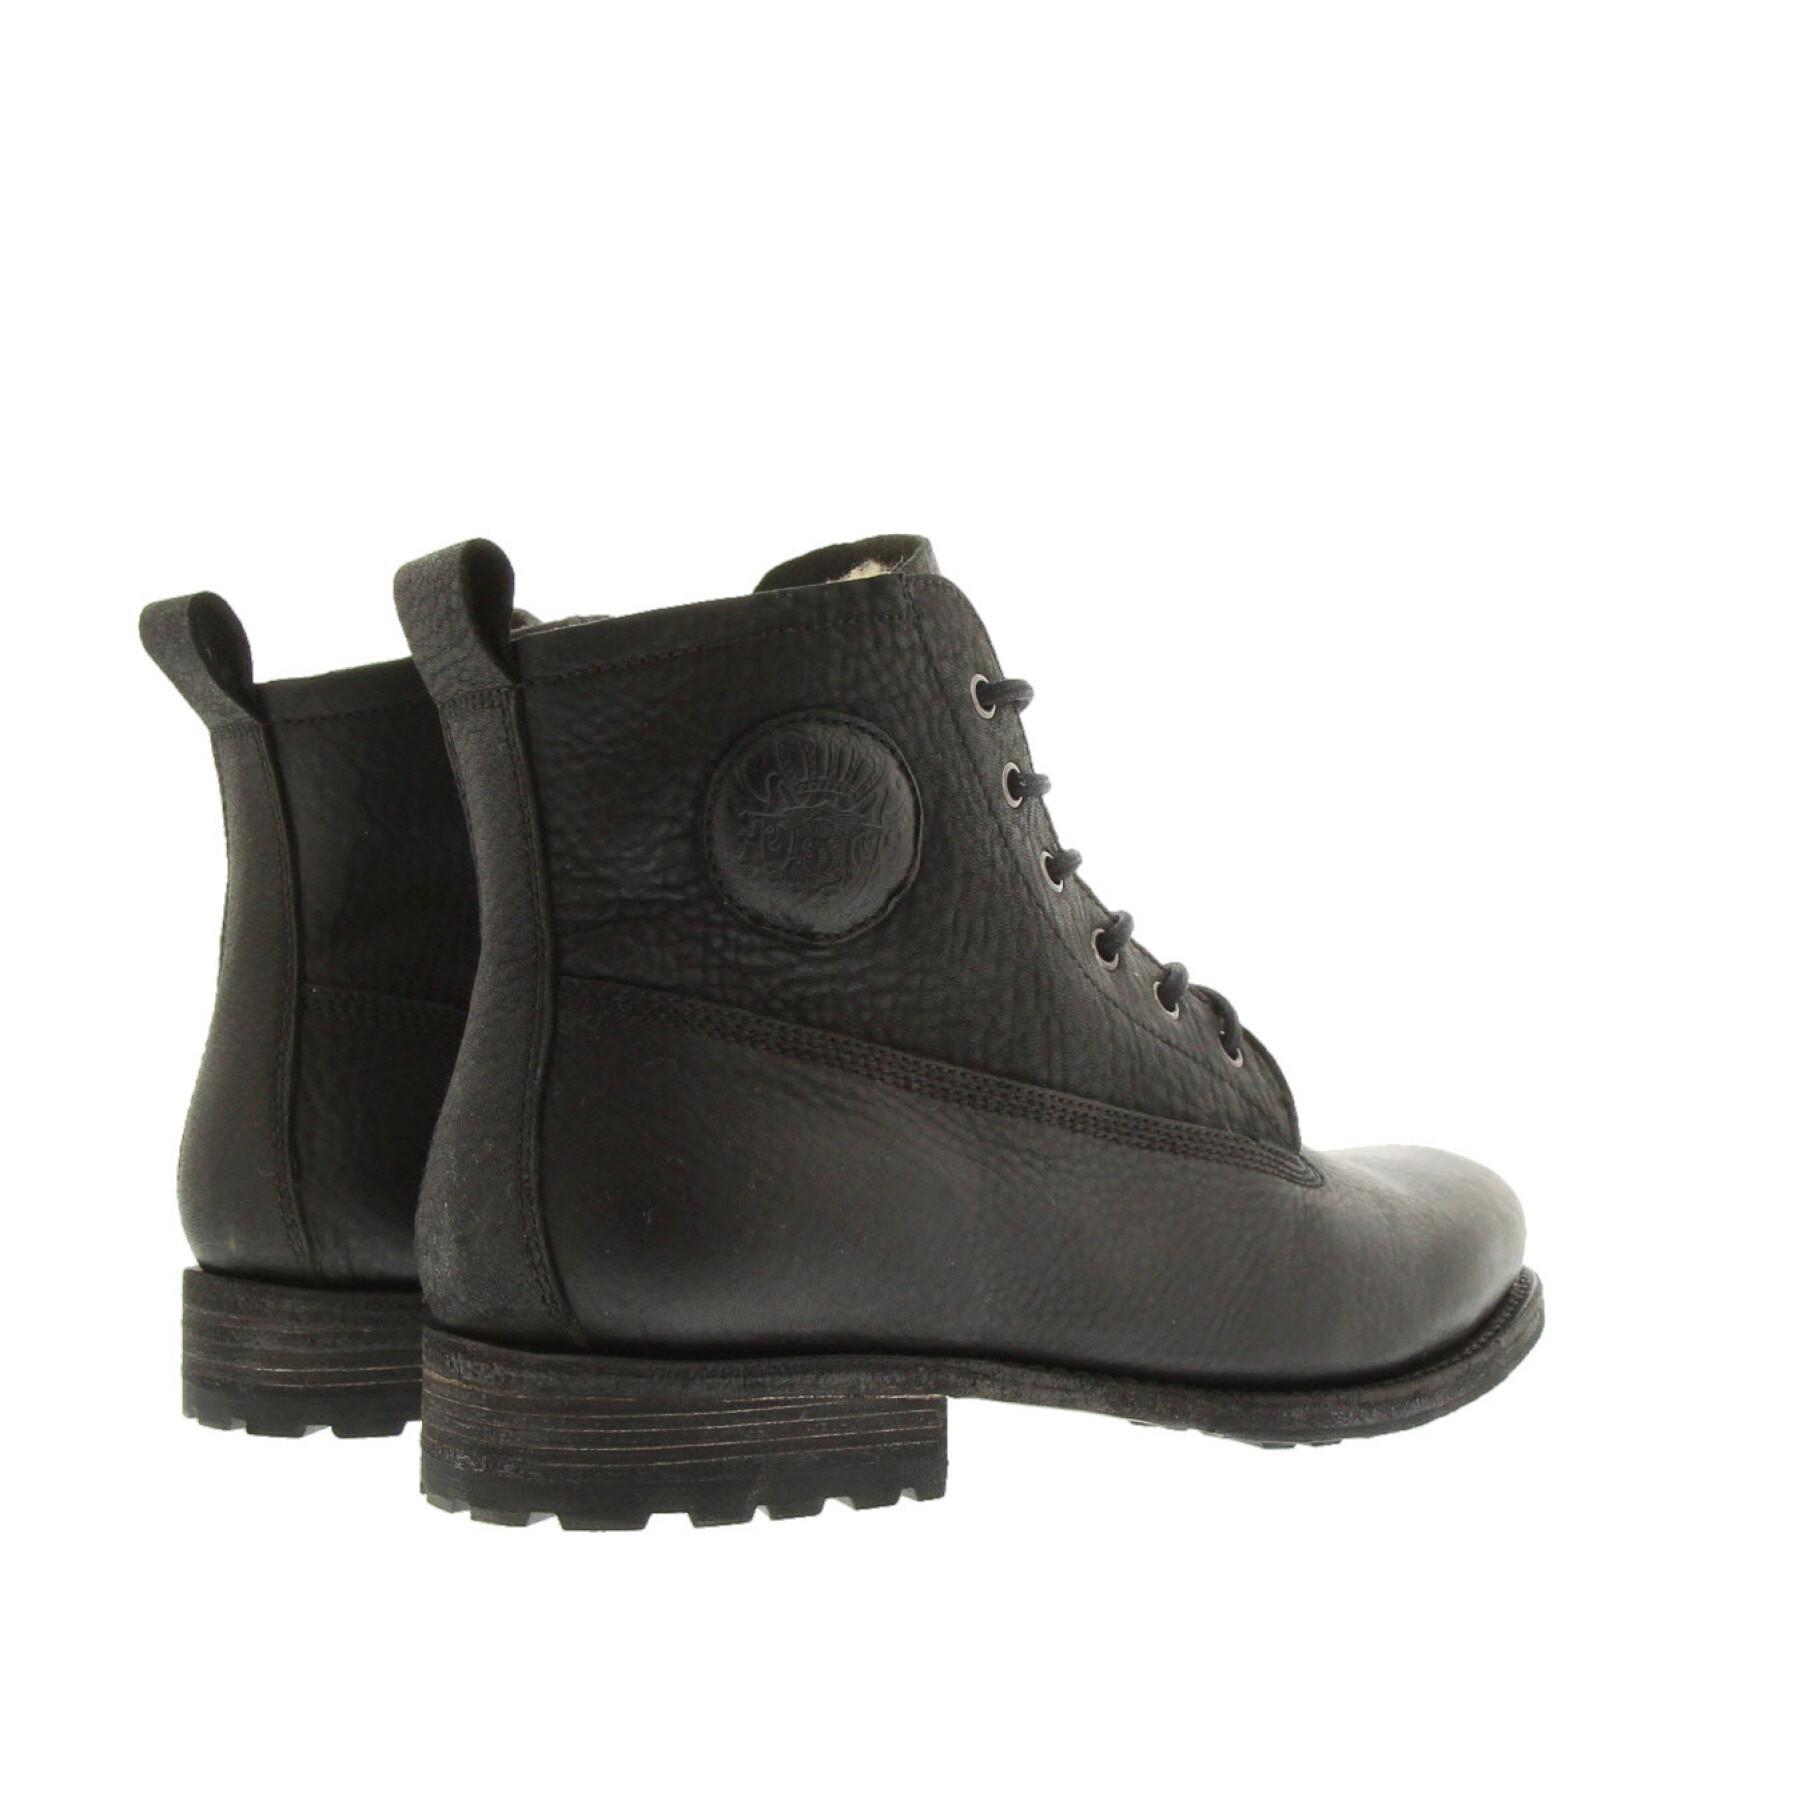 Shoes Blackstone Lace Up Boots - Fur